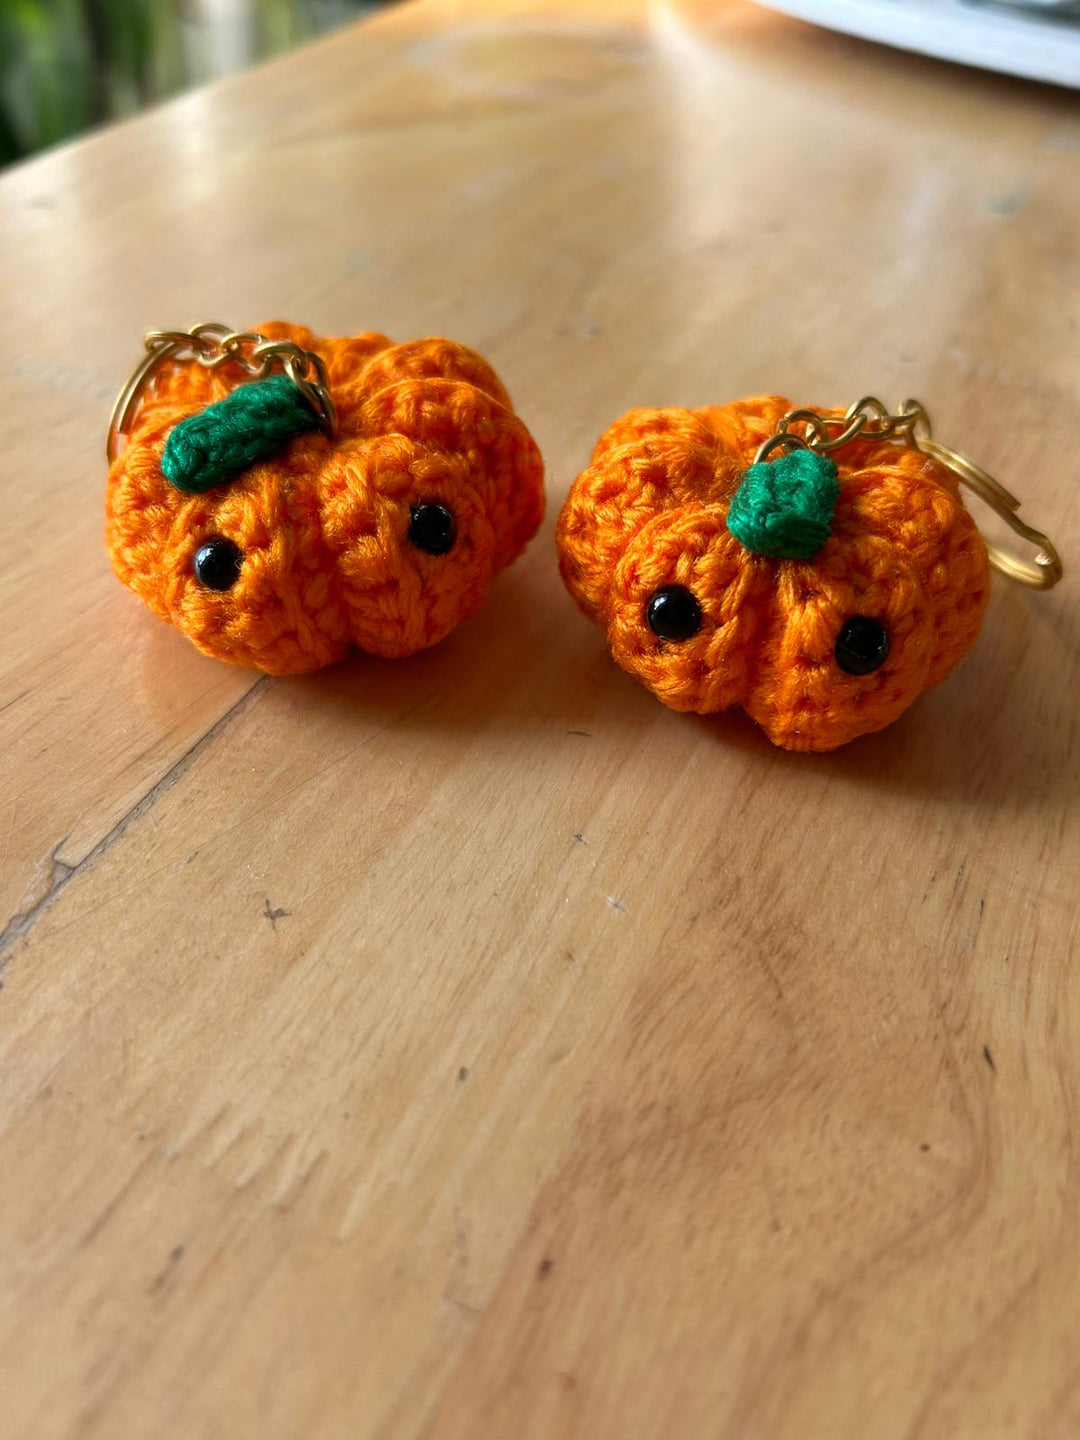 Autumn Bliss Crochet Pumpkin Keychains